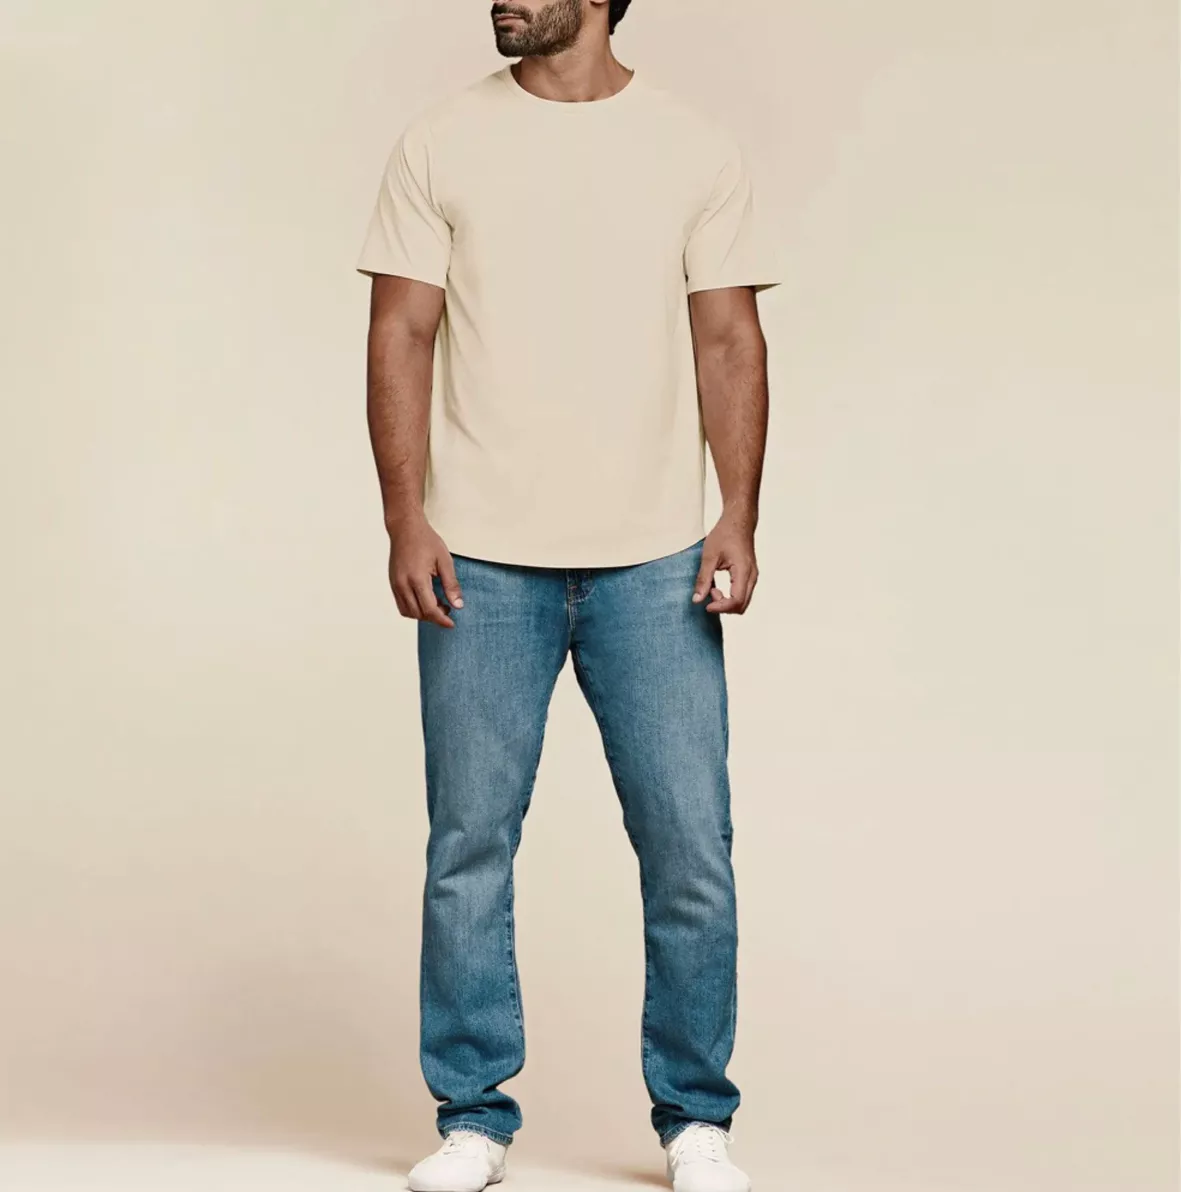 V-Neck Short Sleeve Pocket T-Shirt curated on LTK